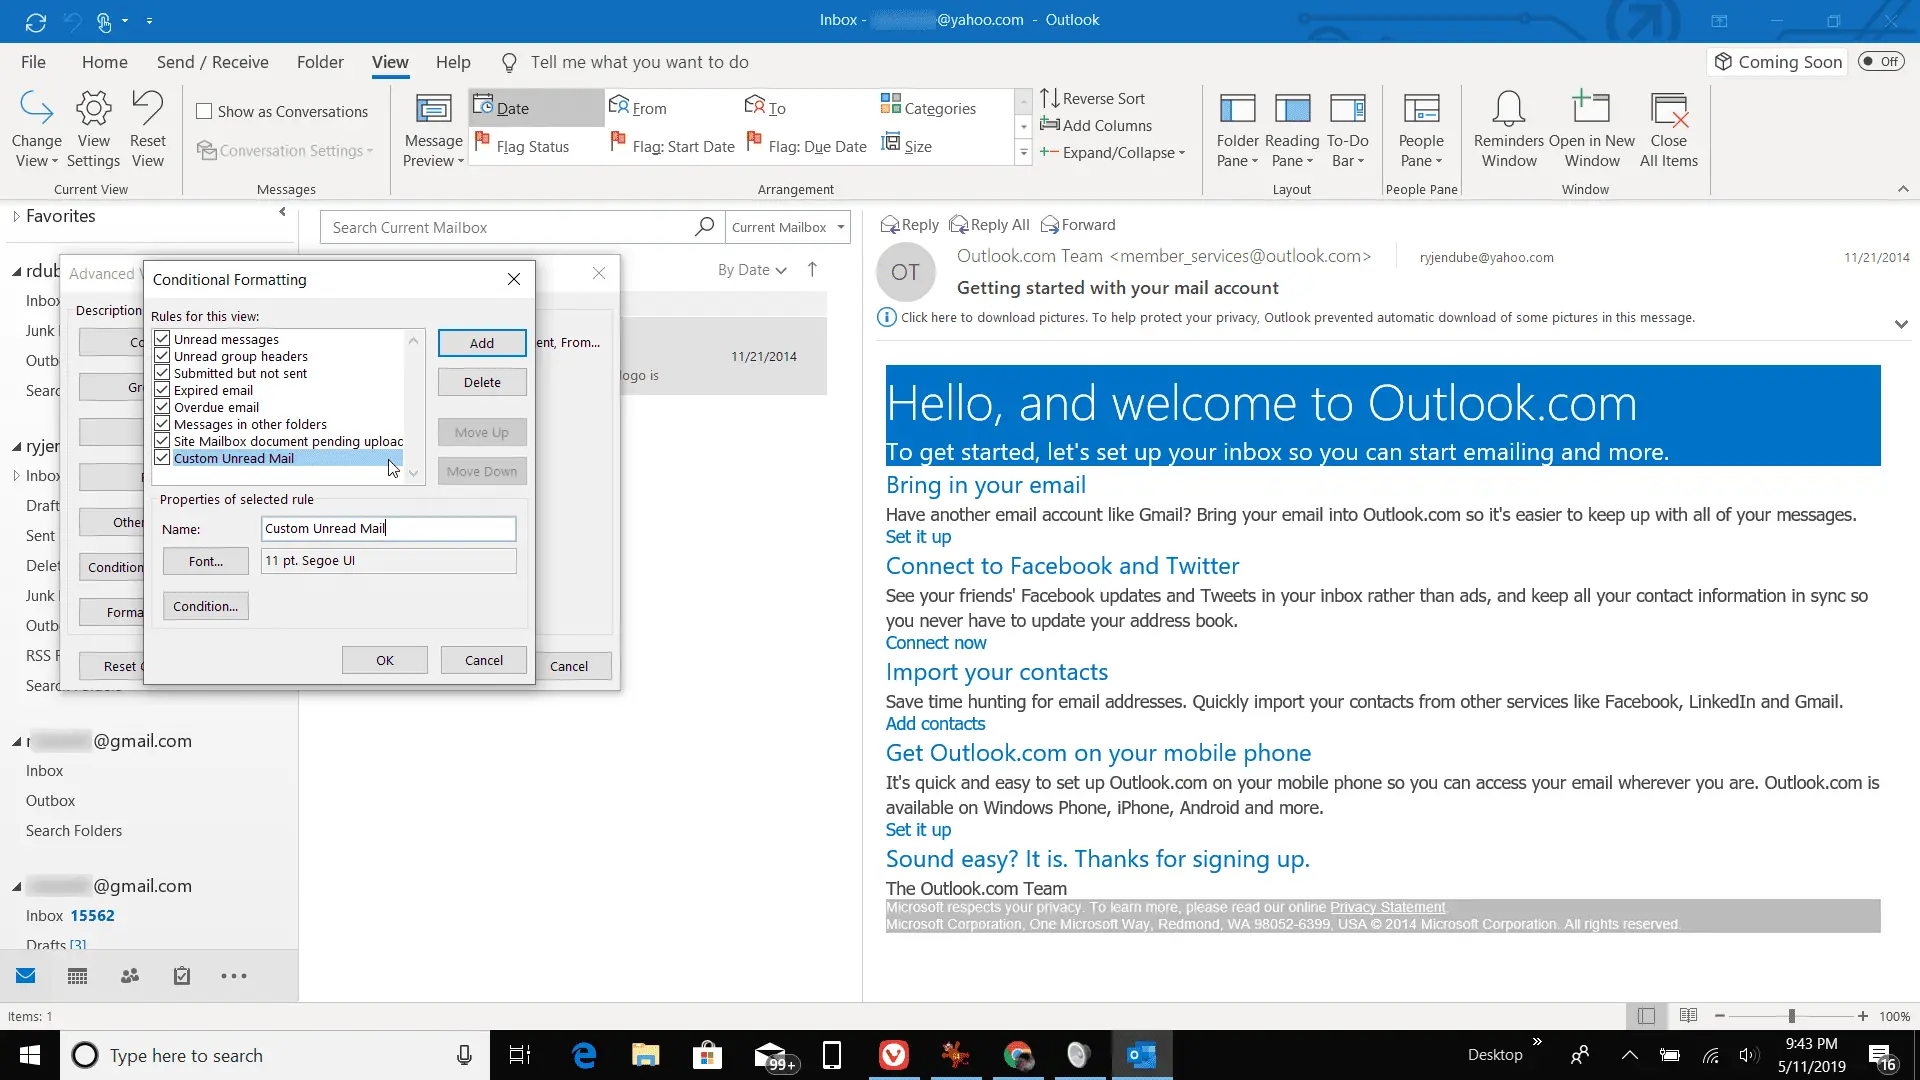 Captura de tela da nomenclatura do novo formato condicional no Outlook